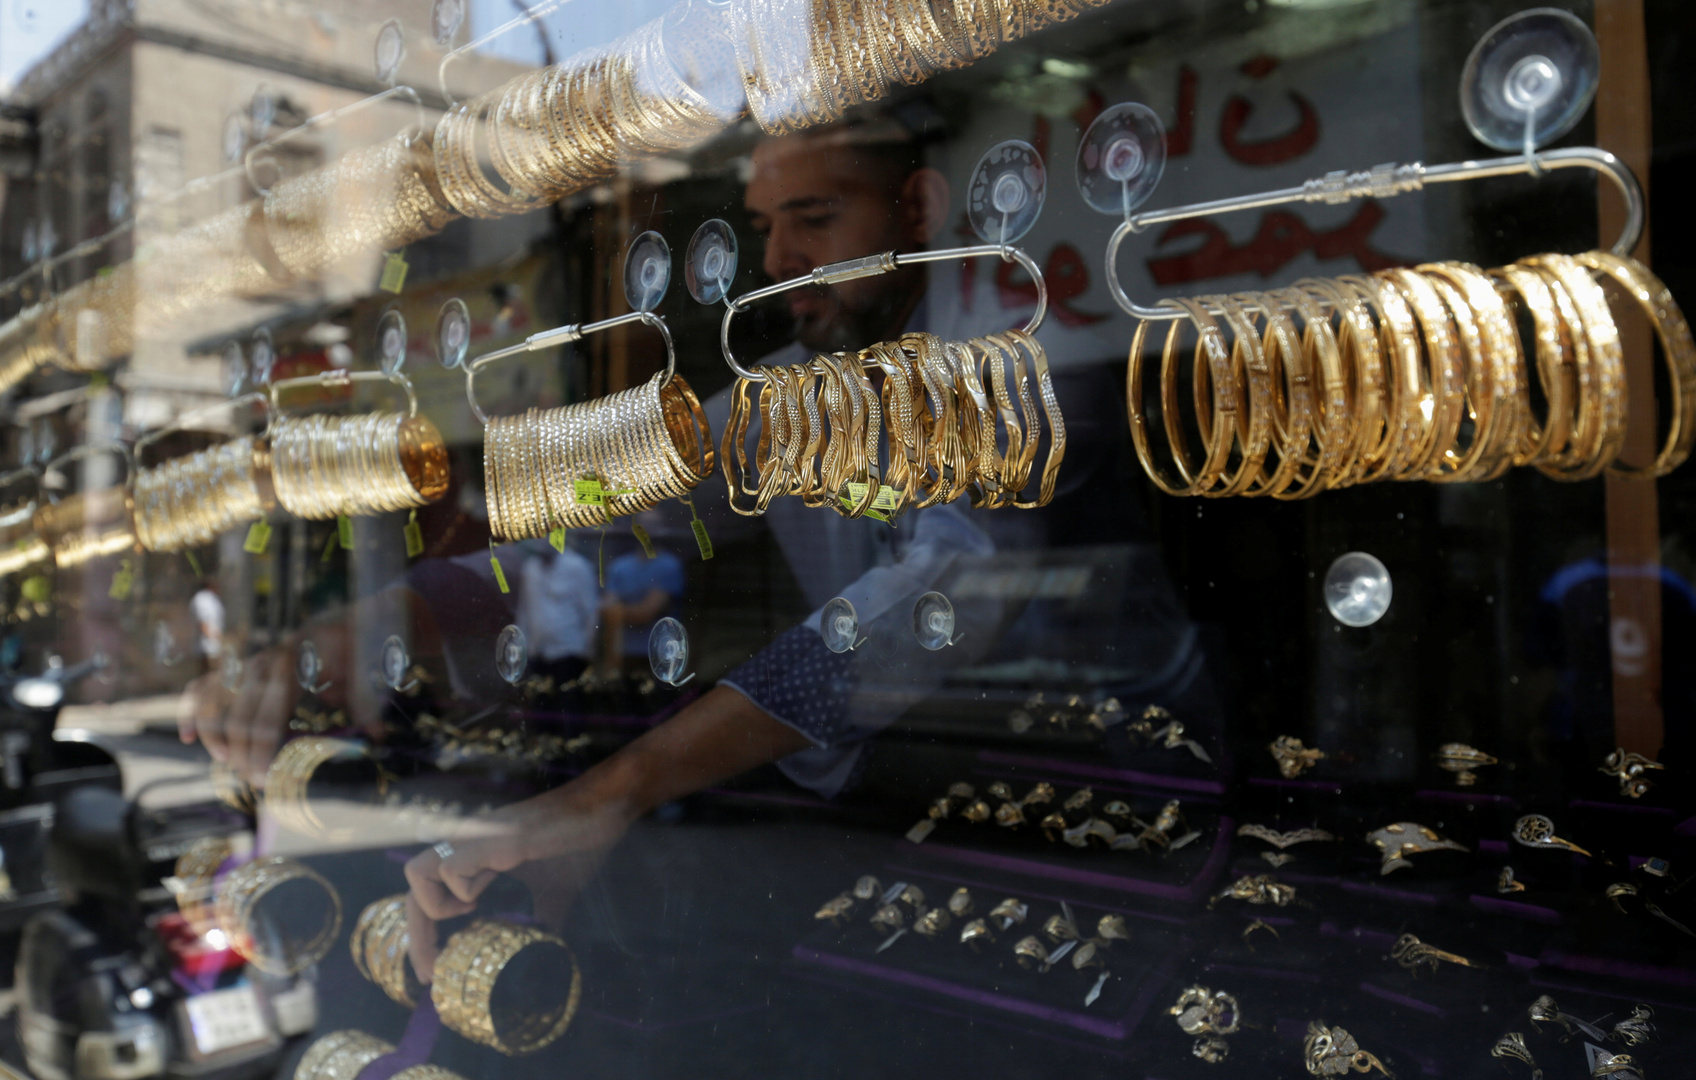 الذهب يتراجع بشكل مفاجئ في مصر خلال دقائق